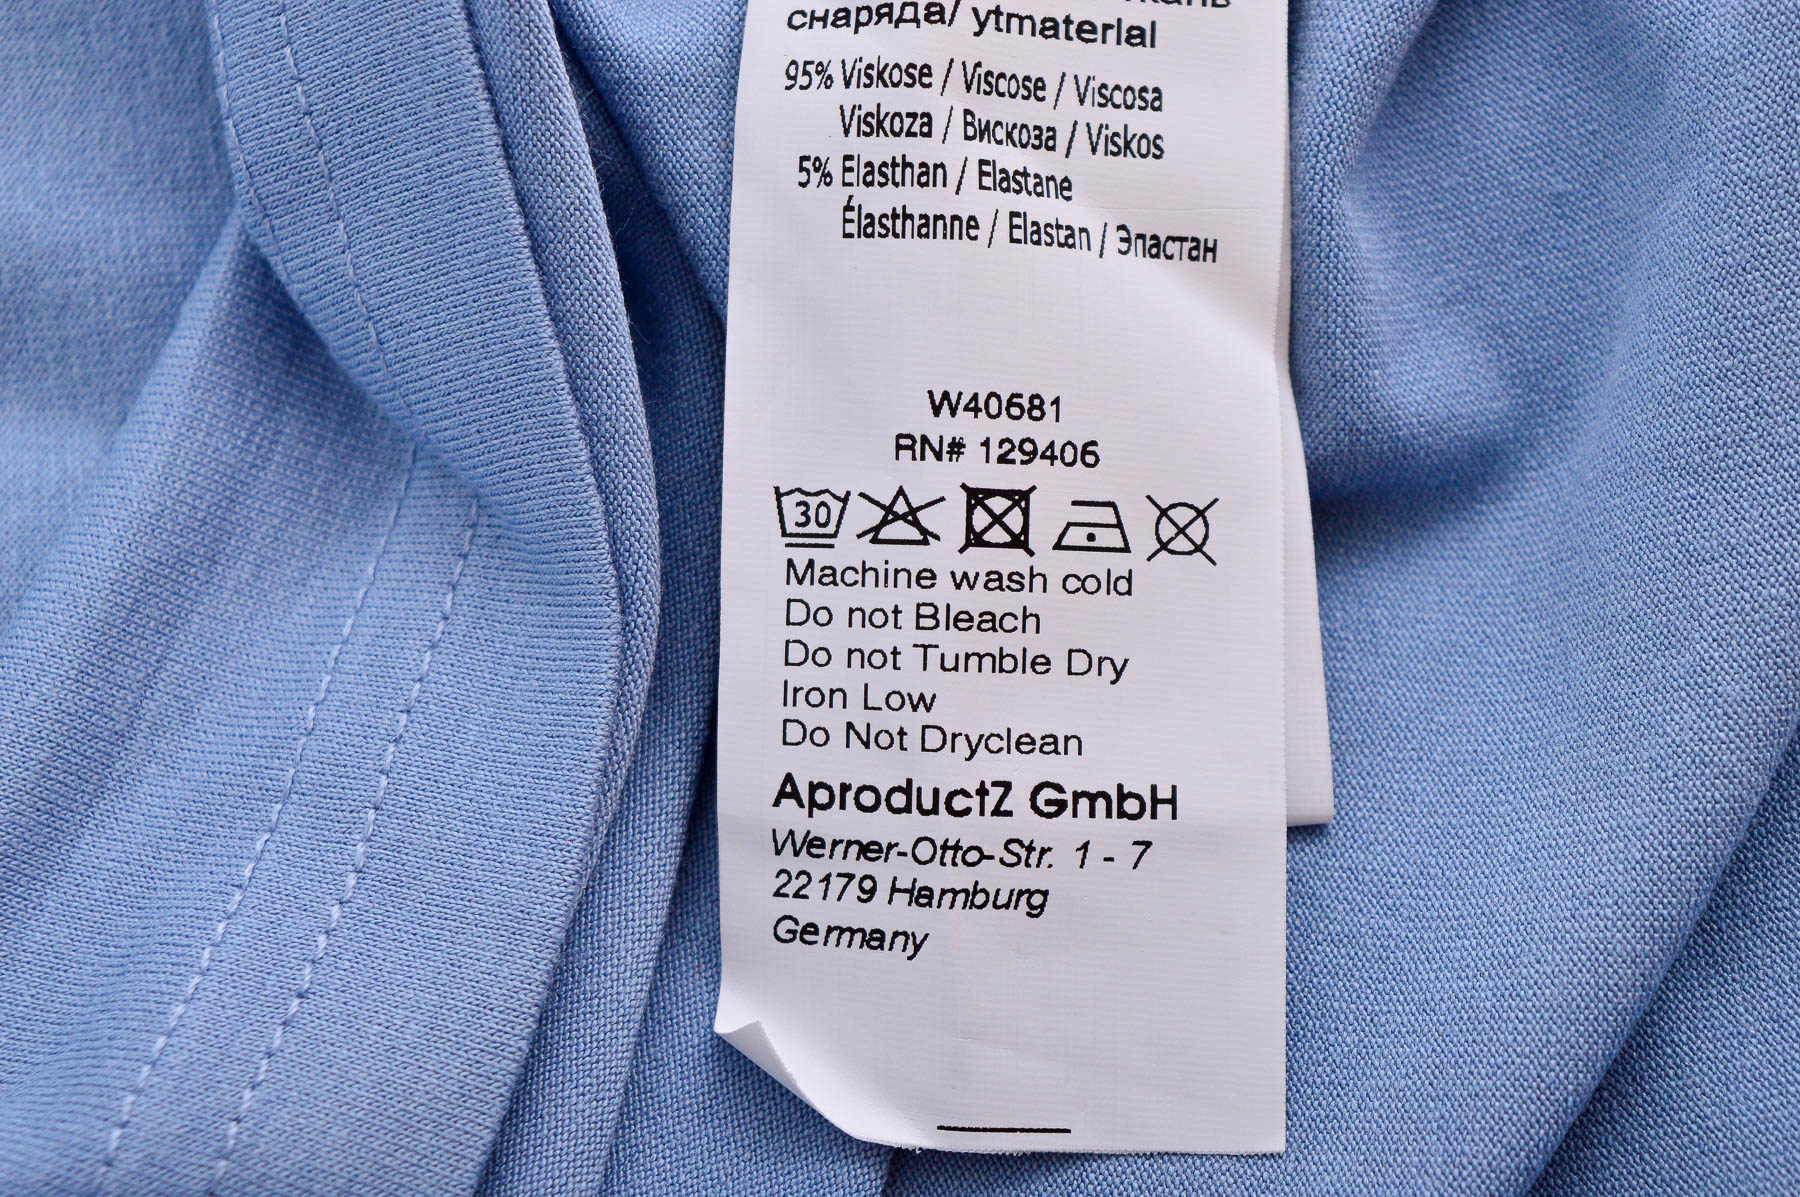 Bluza de damă - AproductZ - 2